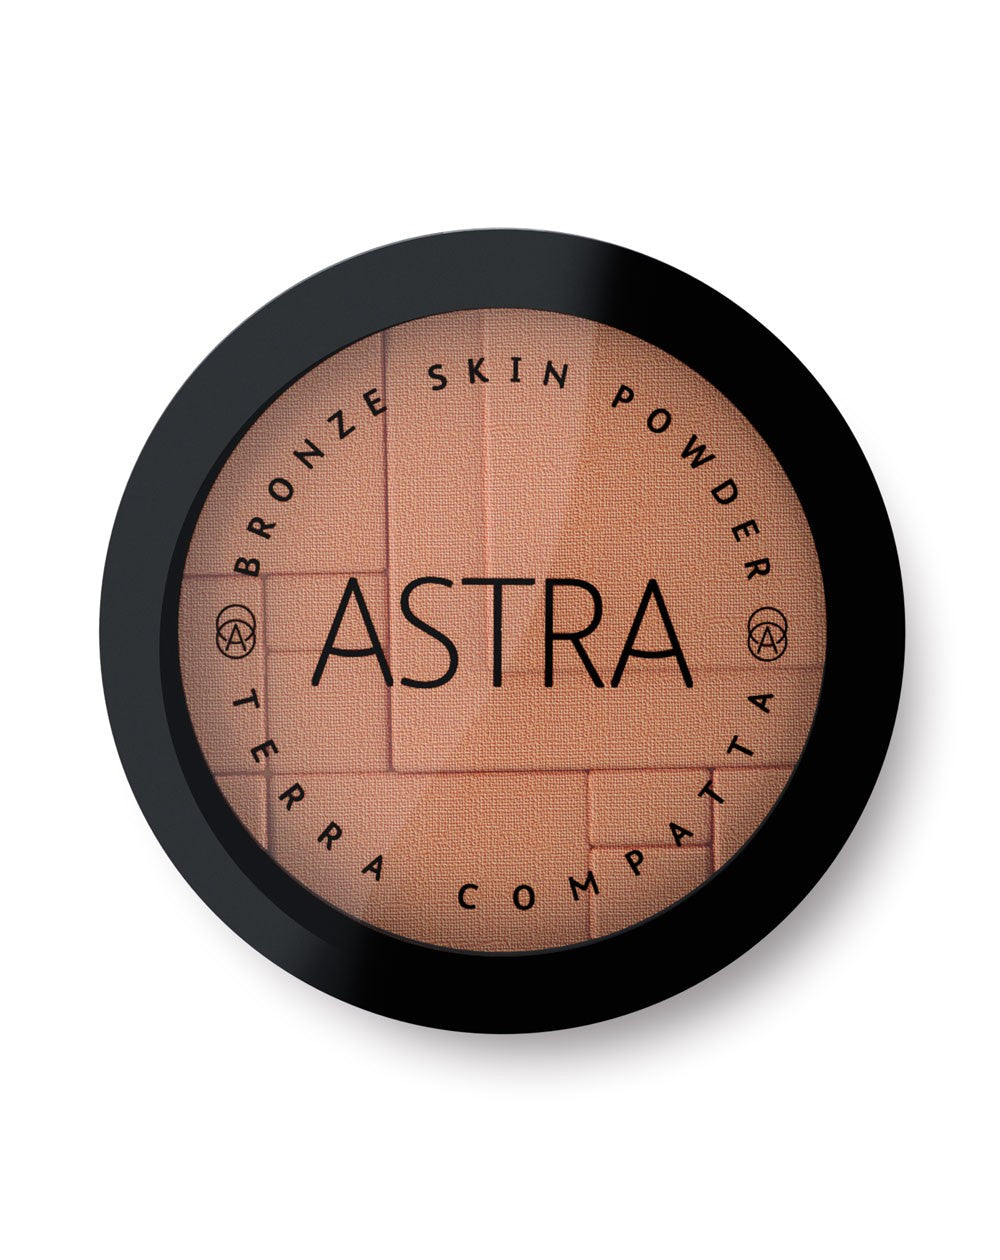 Astra Bronze Skin Powder 8g - RossoLaccaStore